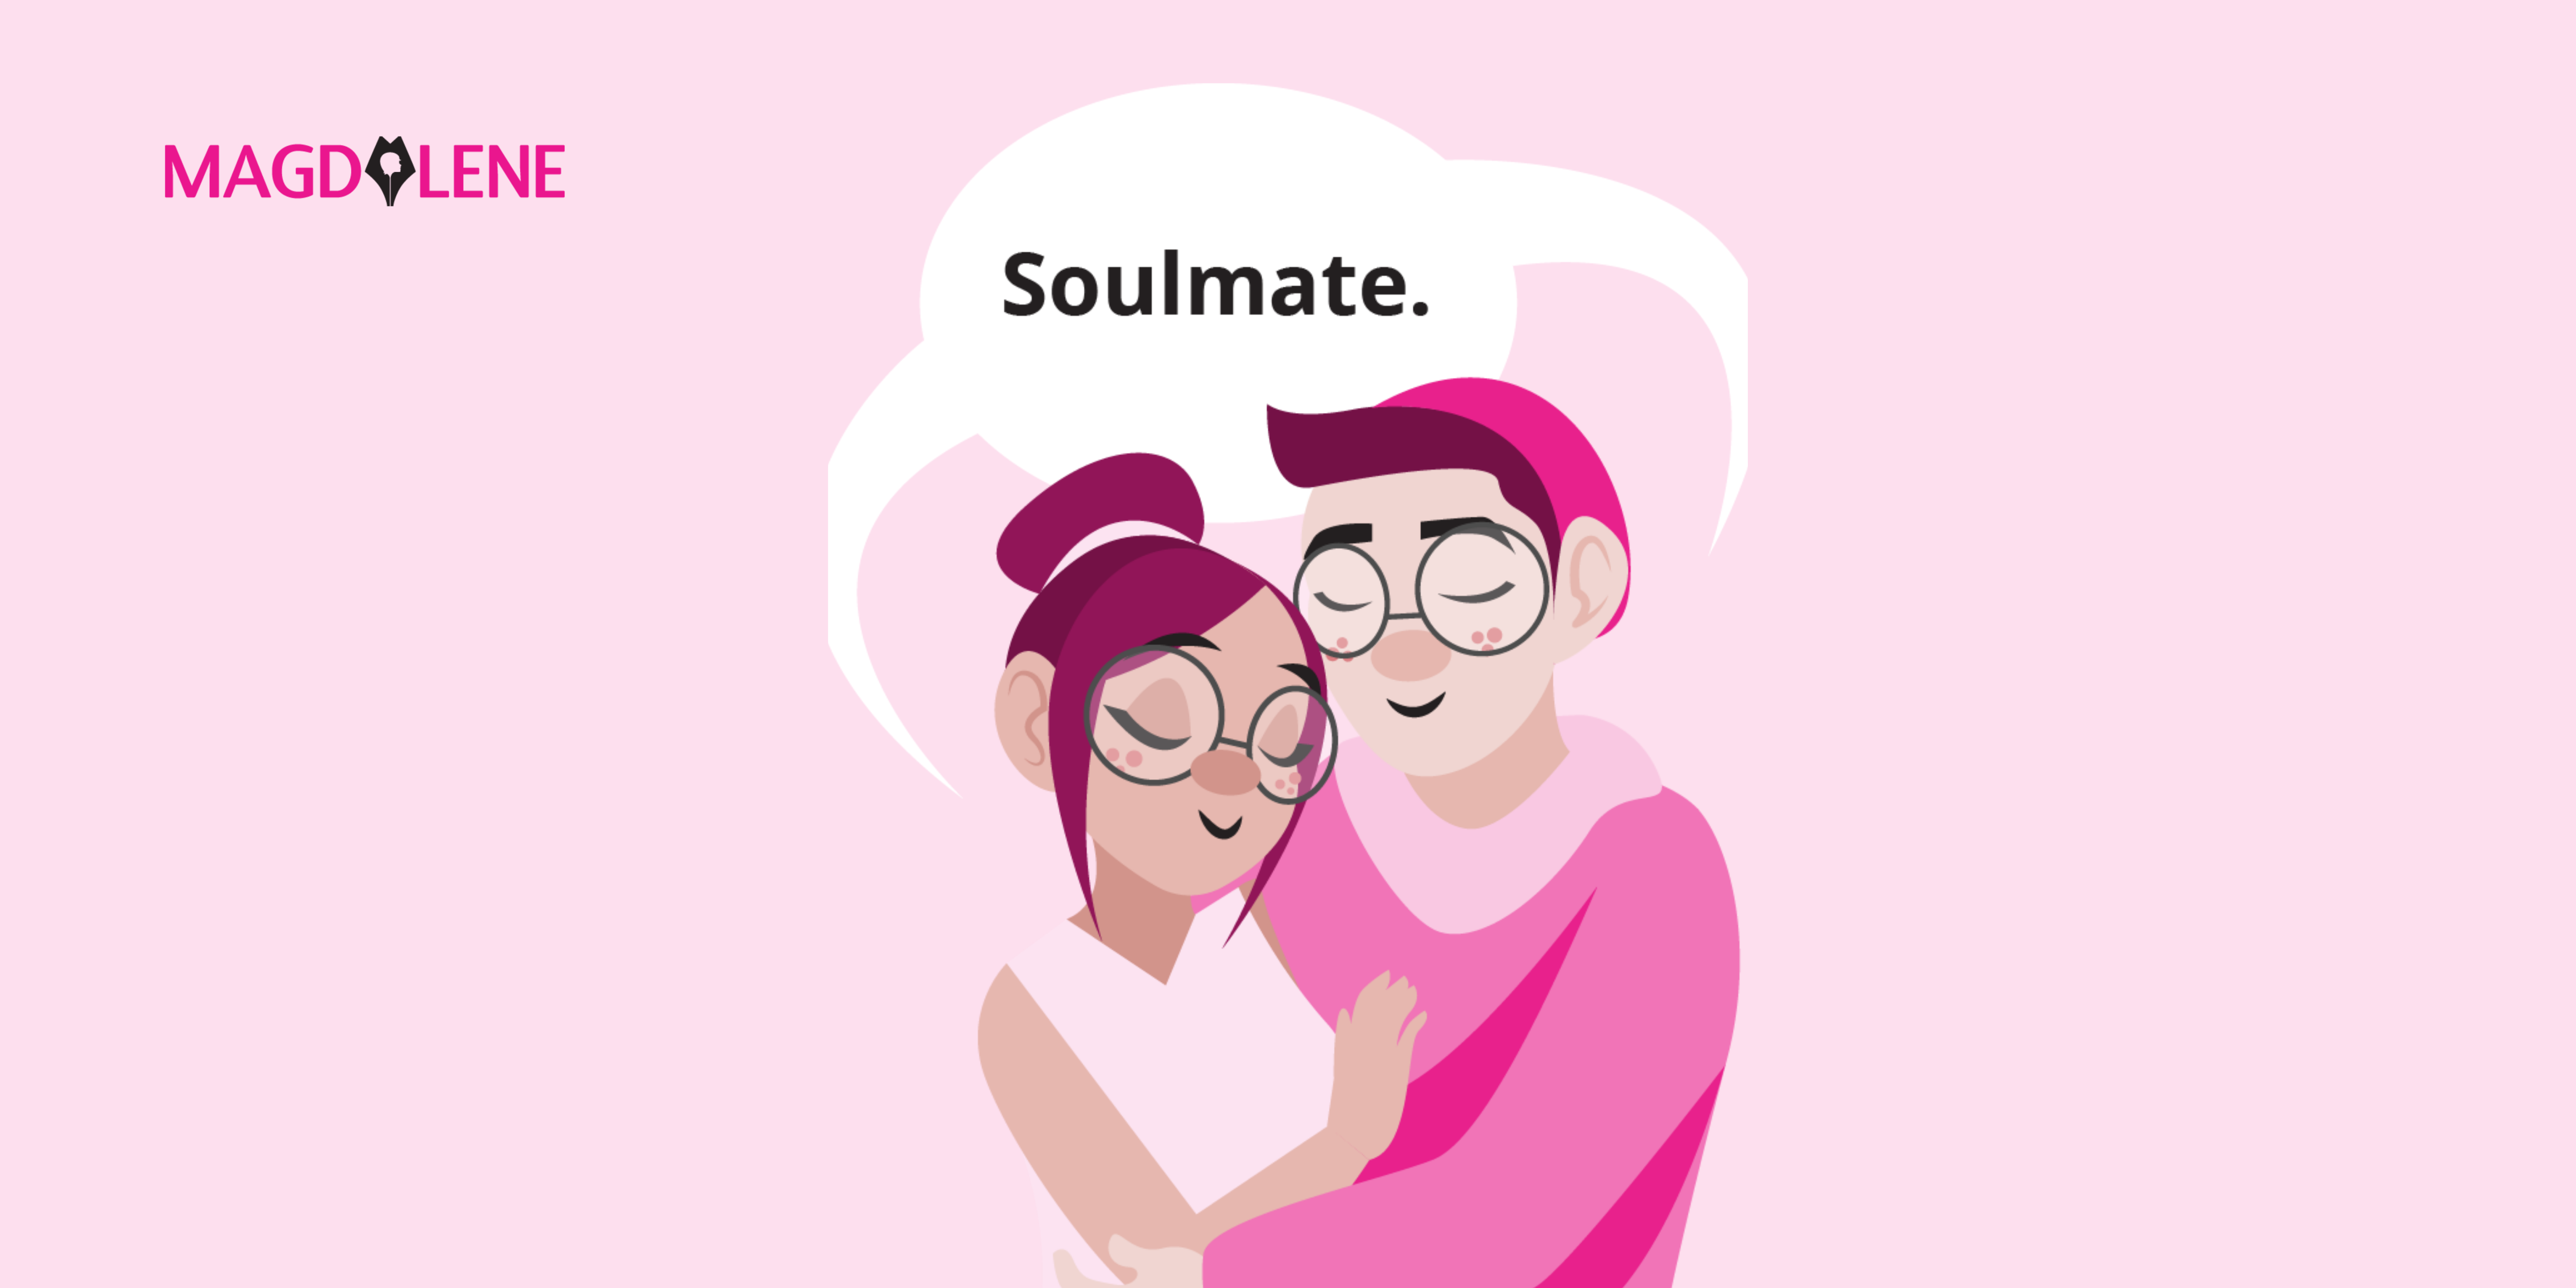 Setop Percaya ‘Soulmate’ Ada dalam Hubungan Romantis